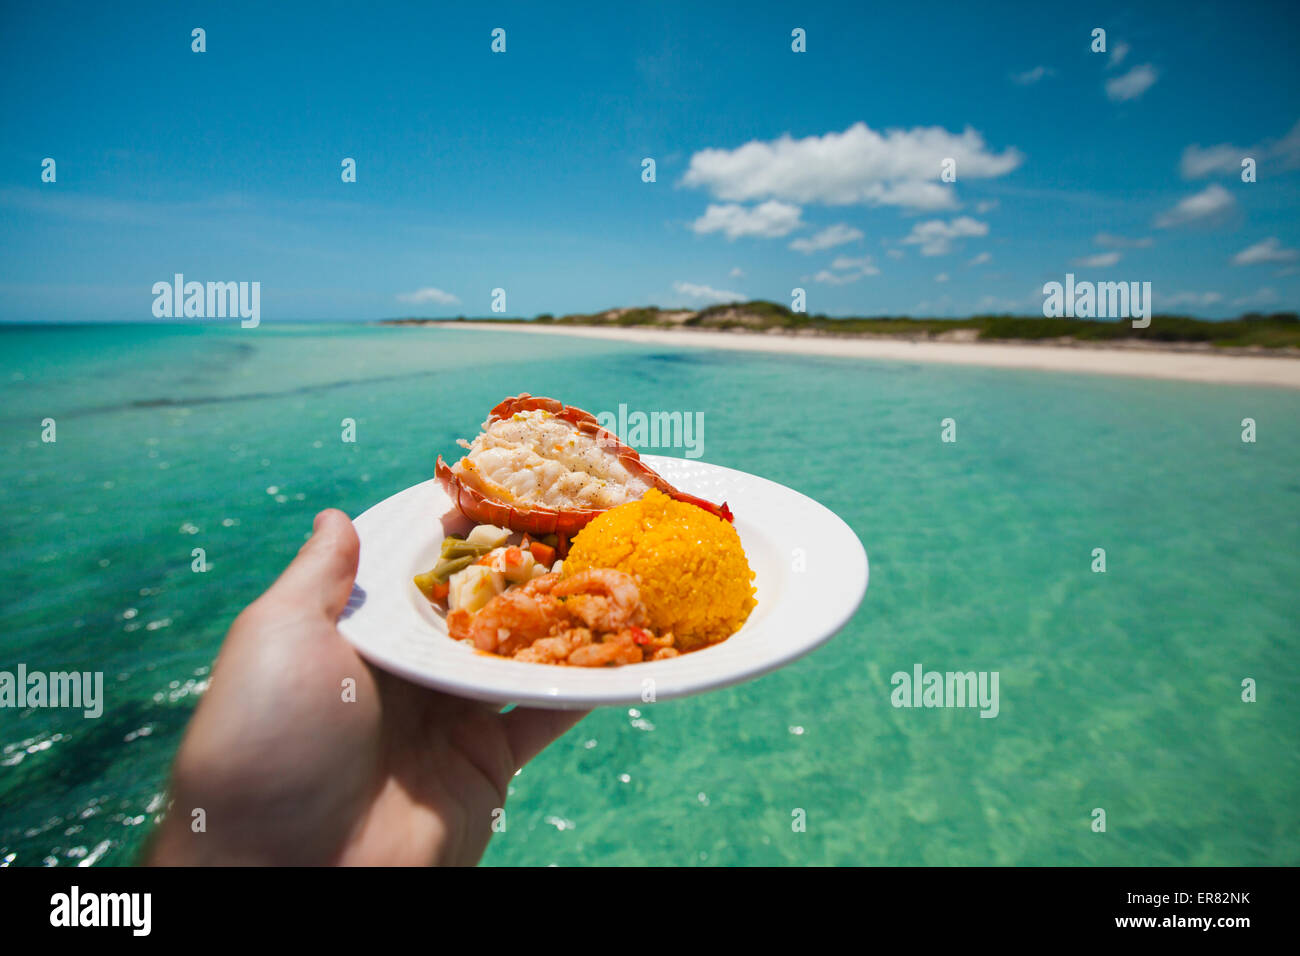 Un homme est titulaire d'un plateau de fruits de mer avec crevettes, queue de homard, et tandis que le riz assaisonné sur un bateau Banque D'Images